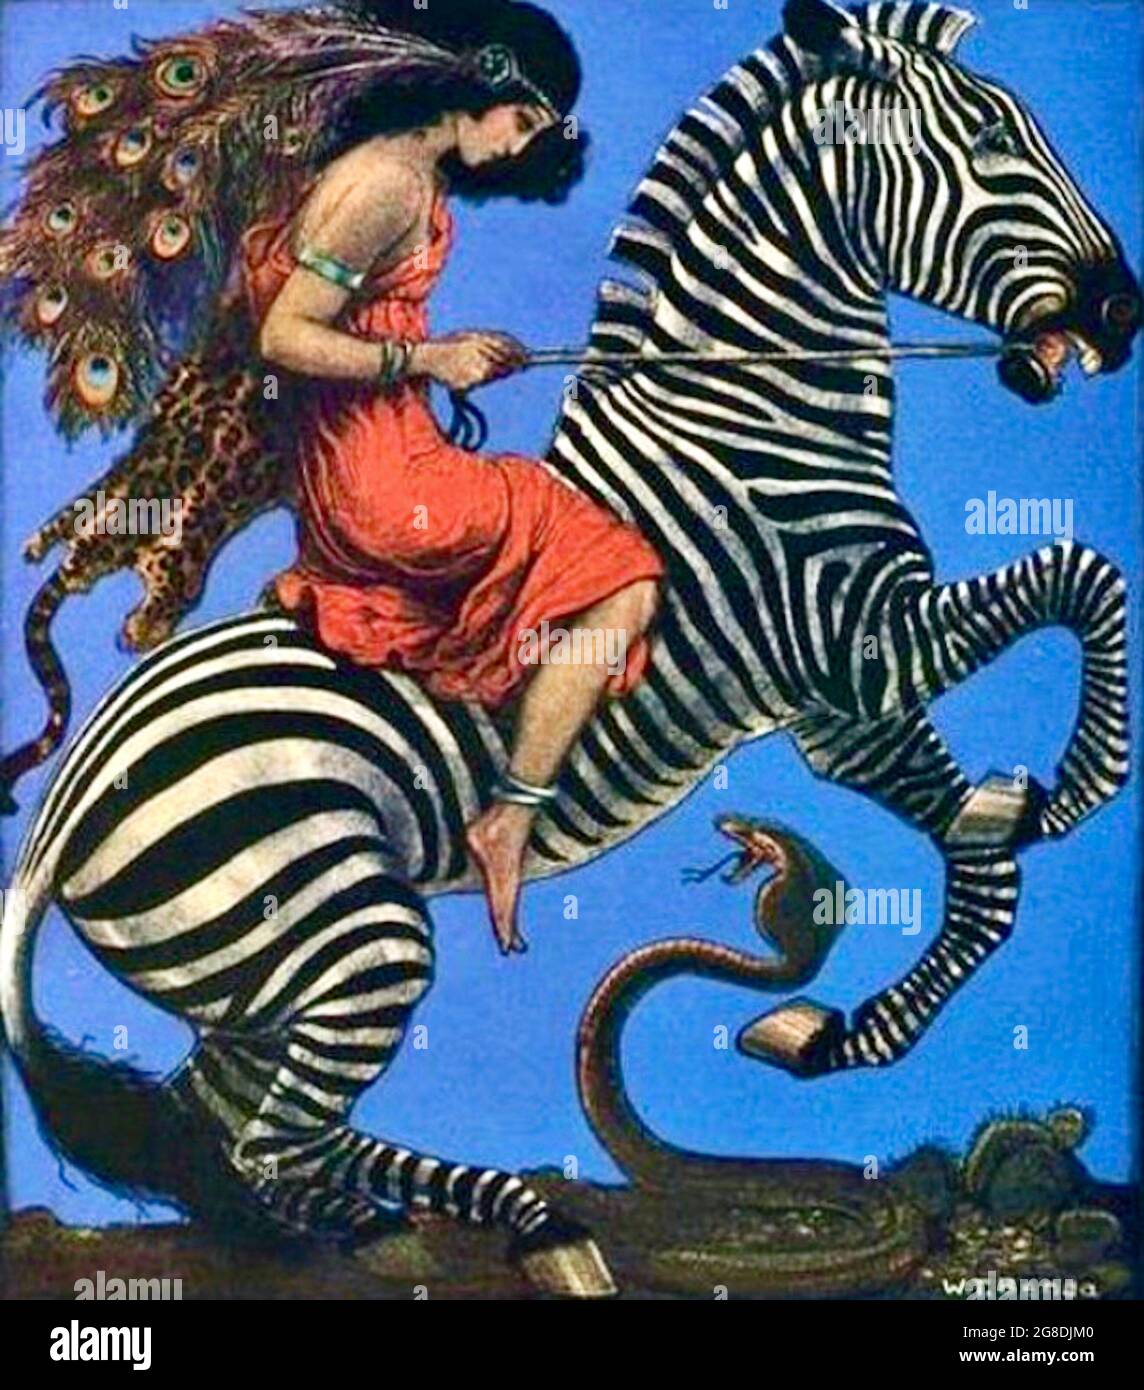 Władysław Teodor Benda - copertina della rivista Life raffigurante una donna che cavalcava una zebra filata da un serpente di cobra. La motociclista ha piume di pavone nei capelli. Foto Stock